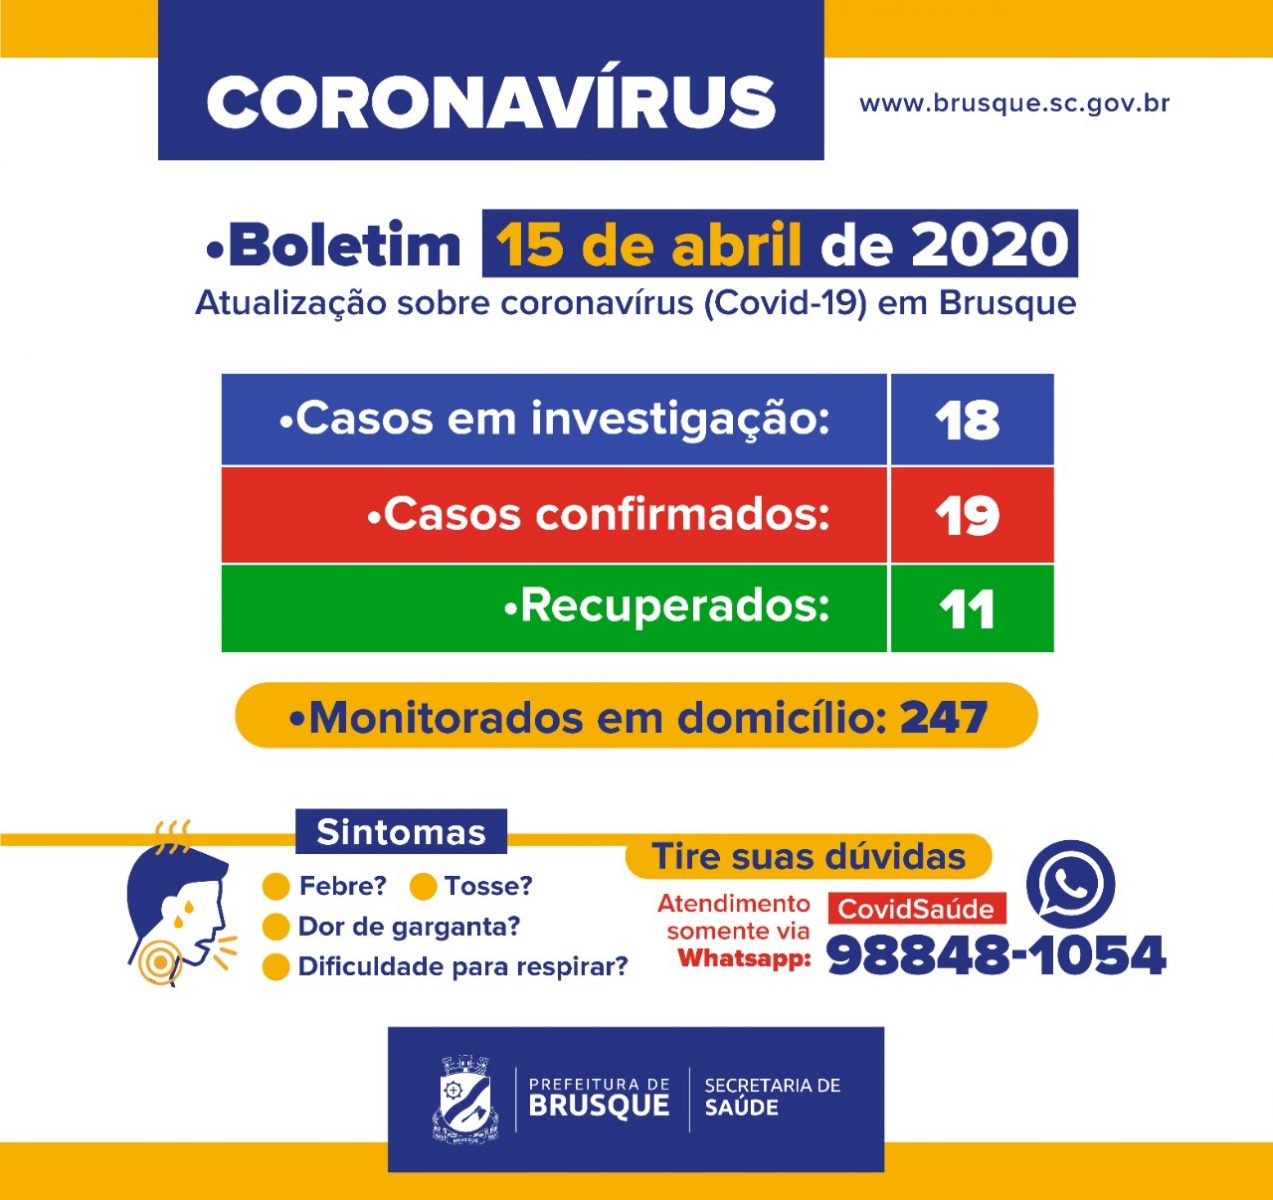 Sobe para 19 o número de casos confirmados de coronavírus em Brusque